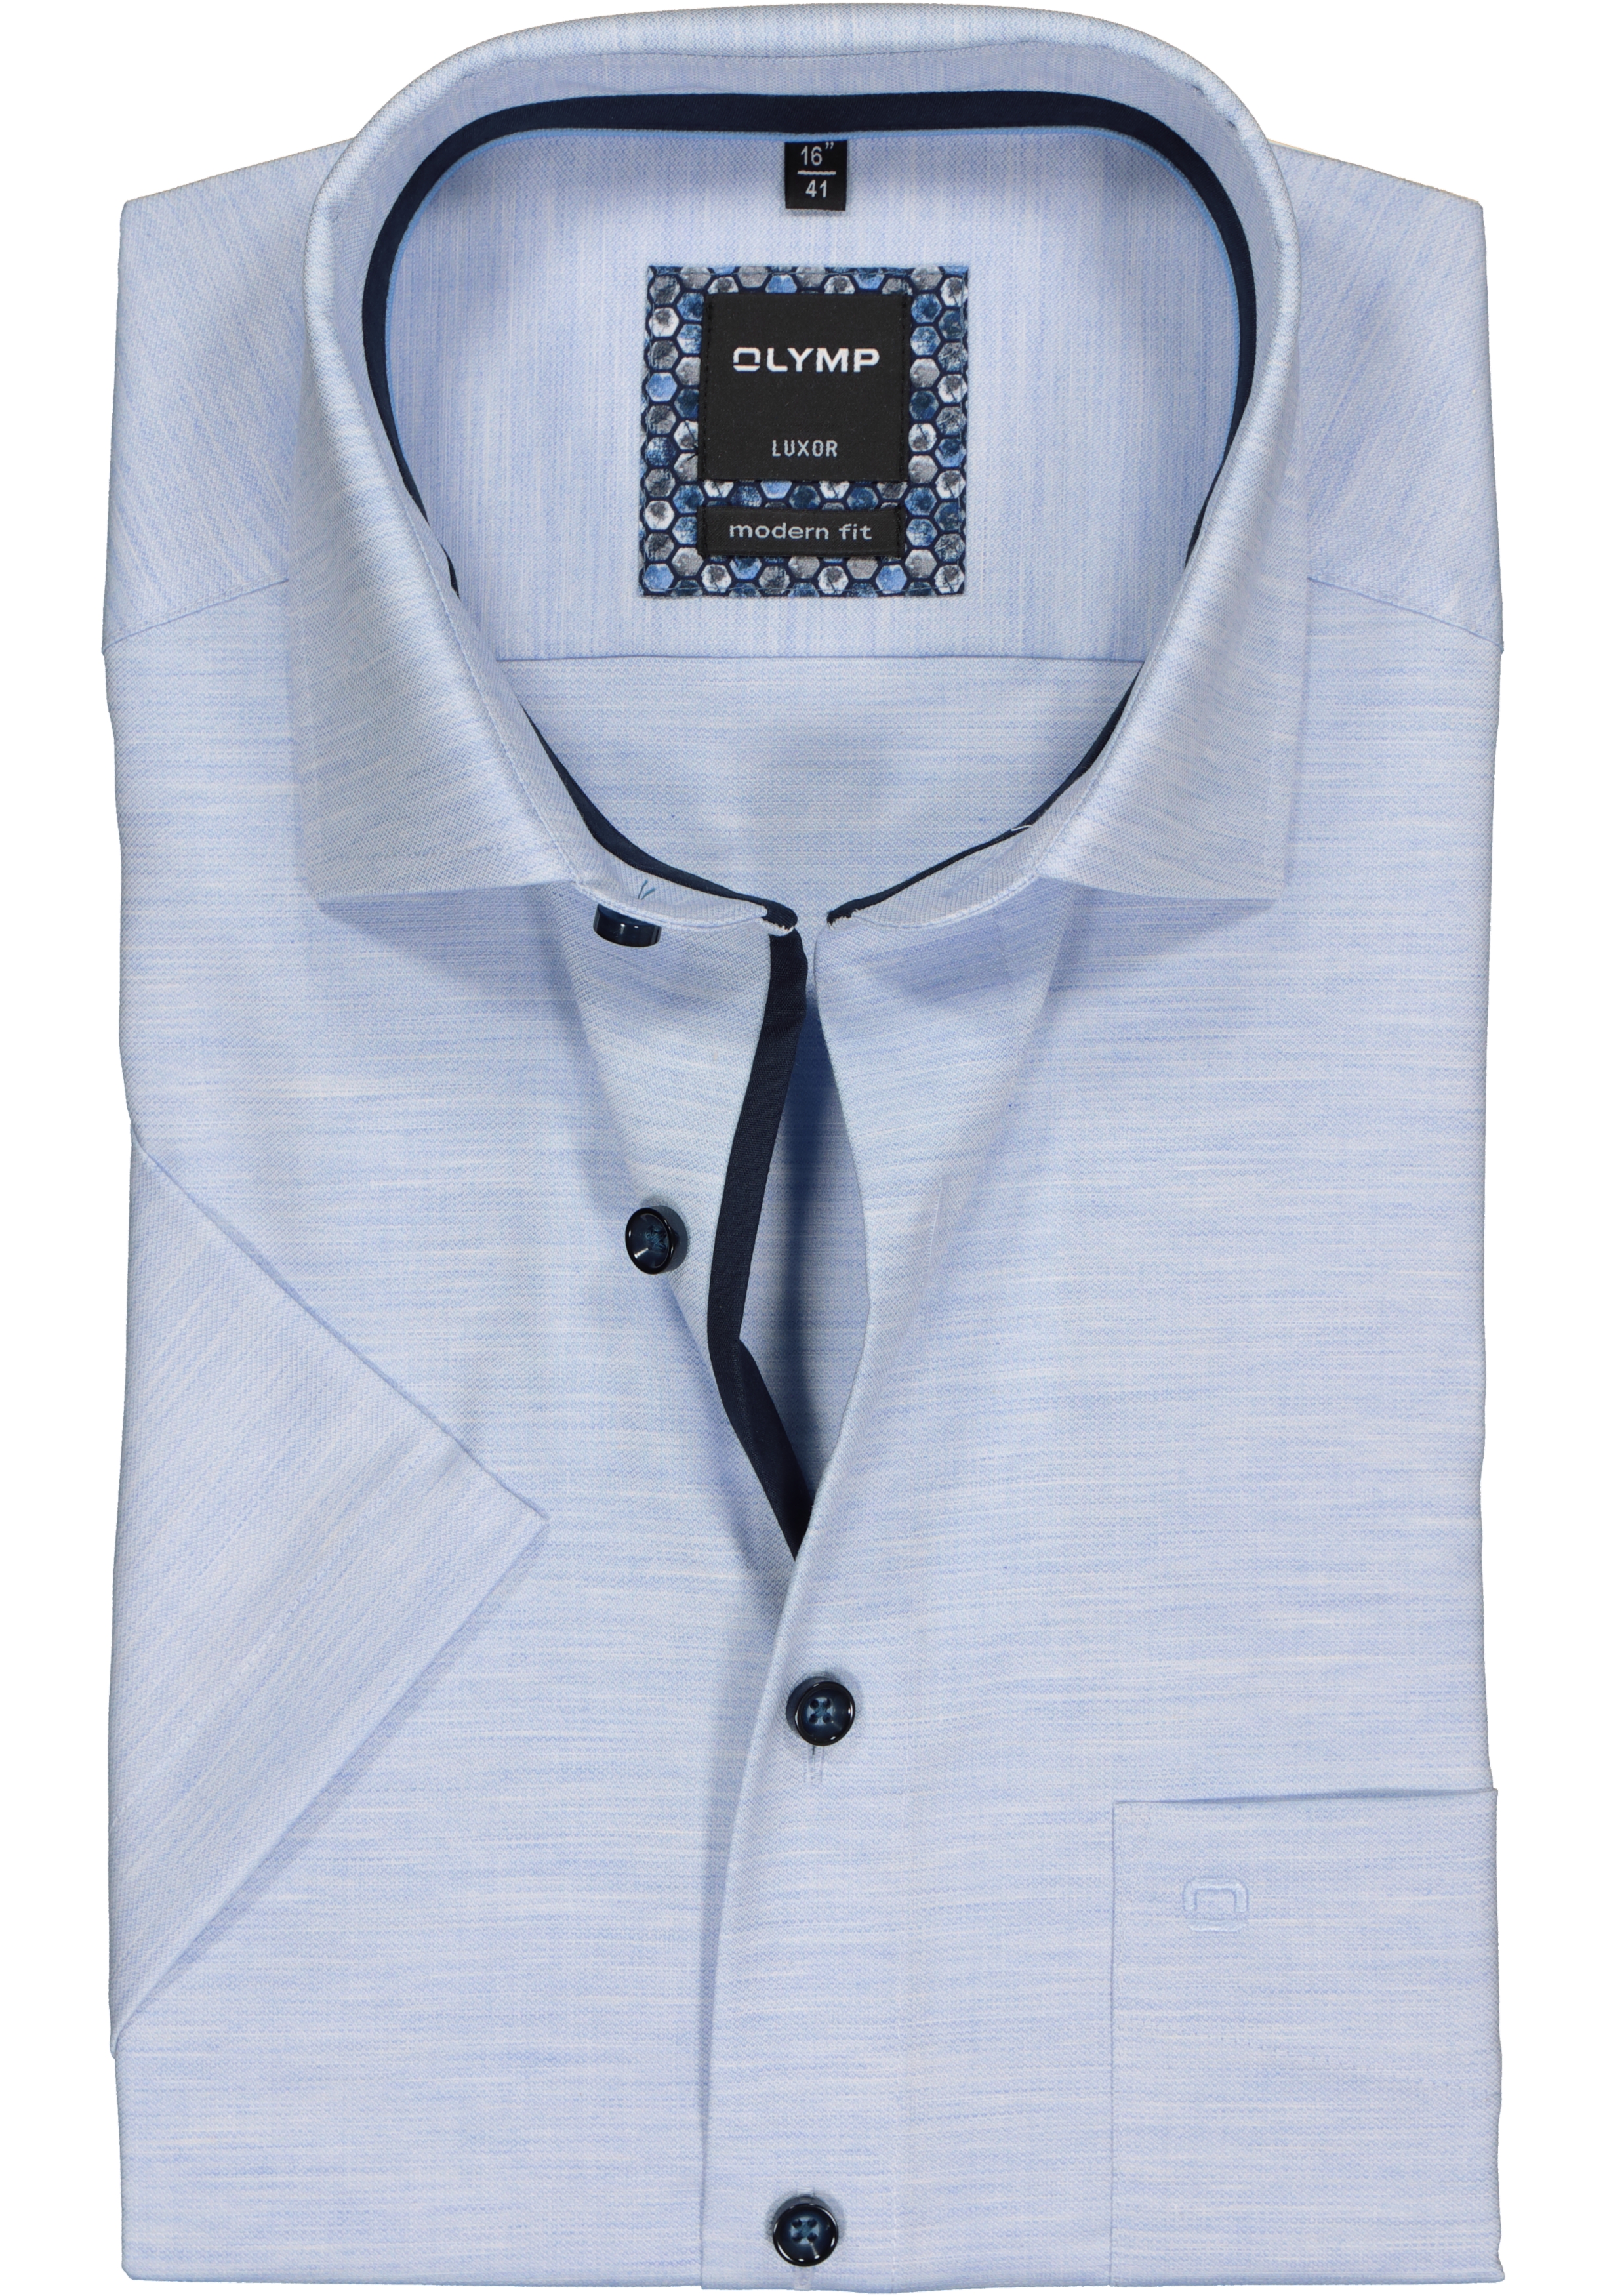 Luxor Modern Fit Overhemd Korte mouw blauw Overhemden.com Heren Kleding Overhemden Korte Mouwen Overhemden 